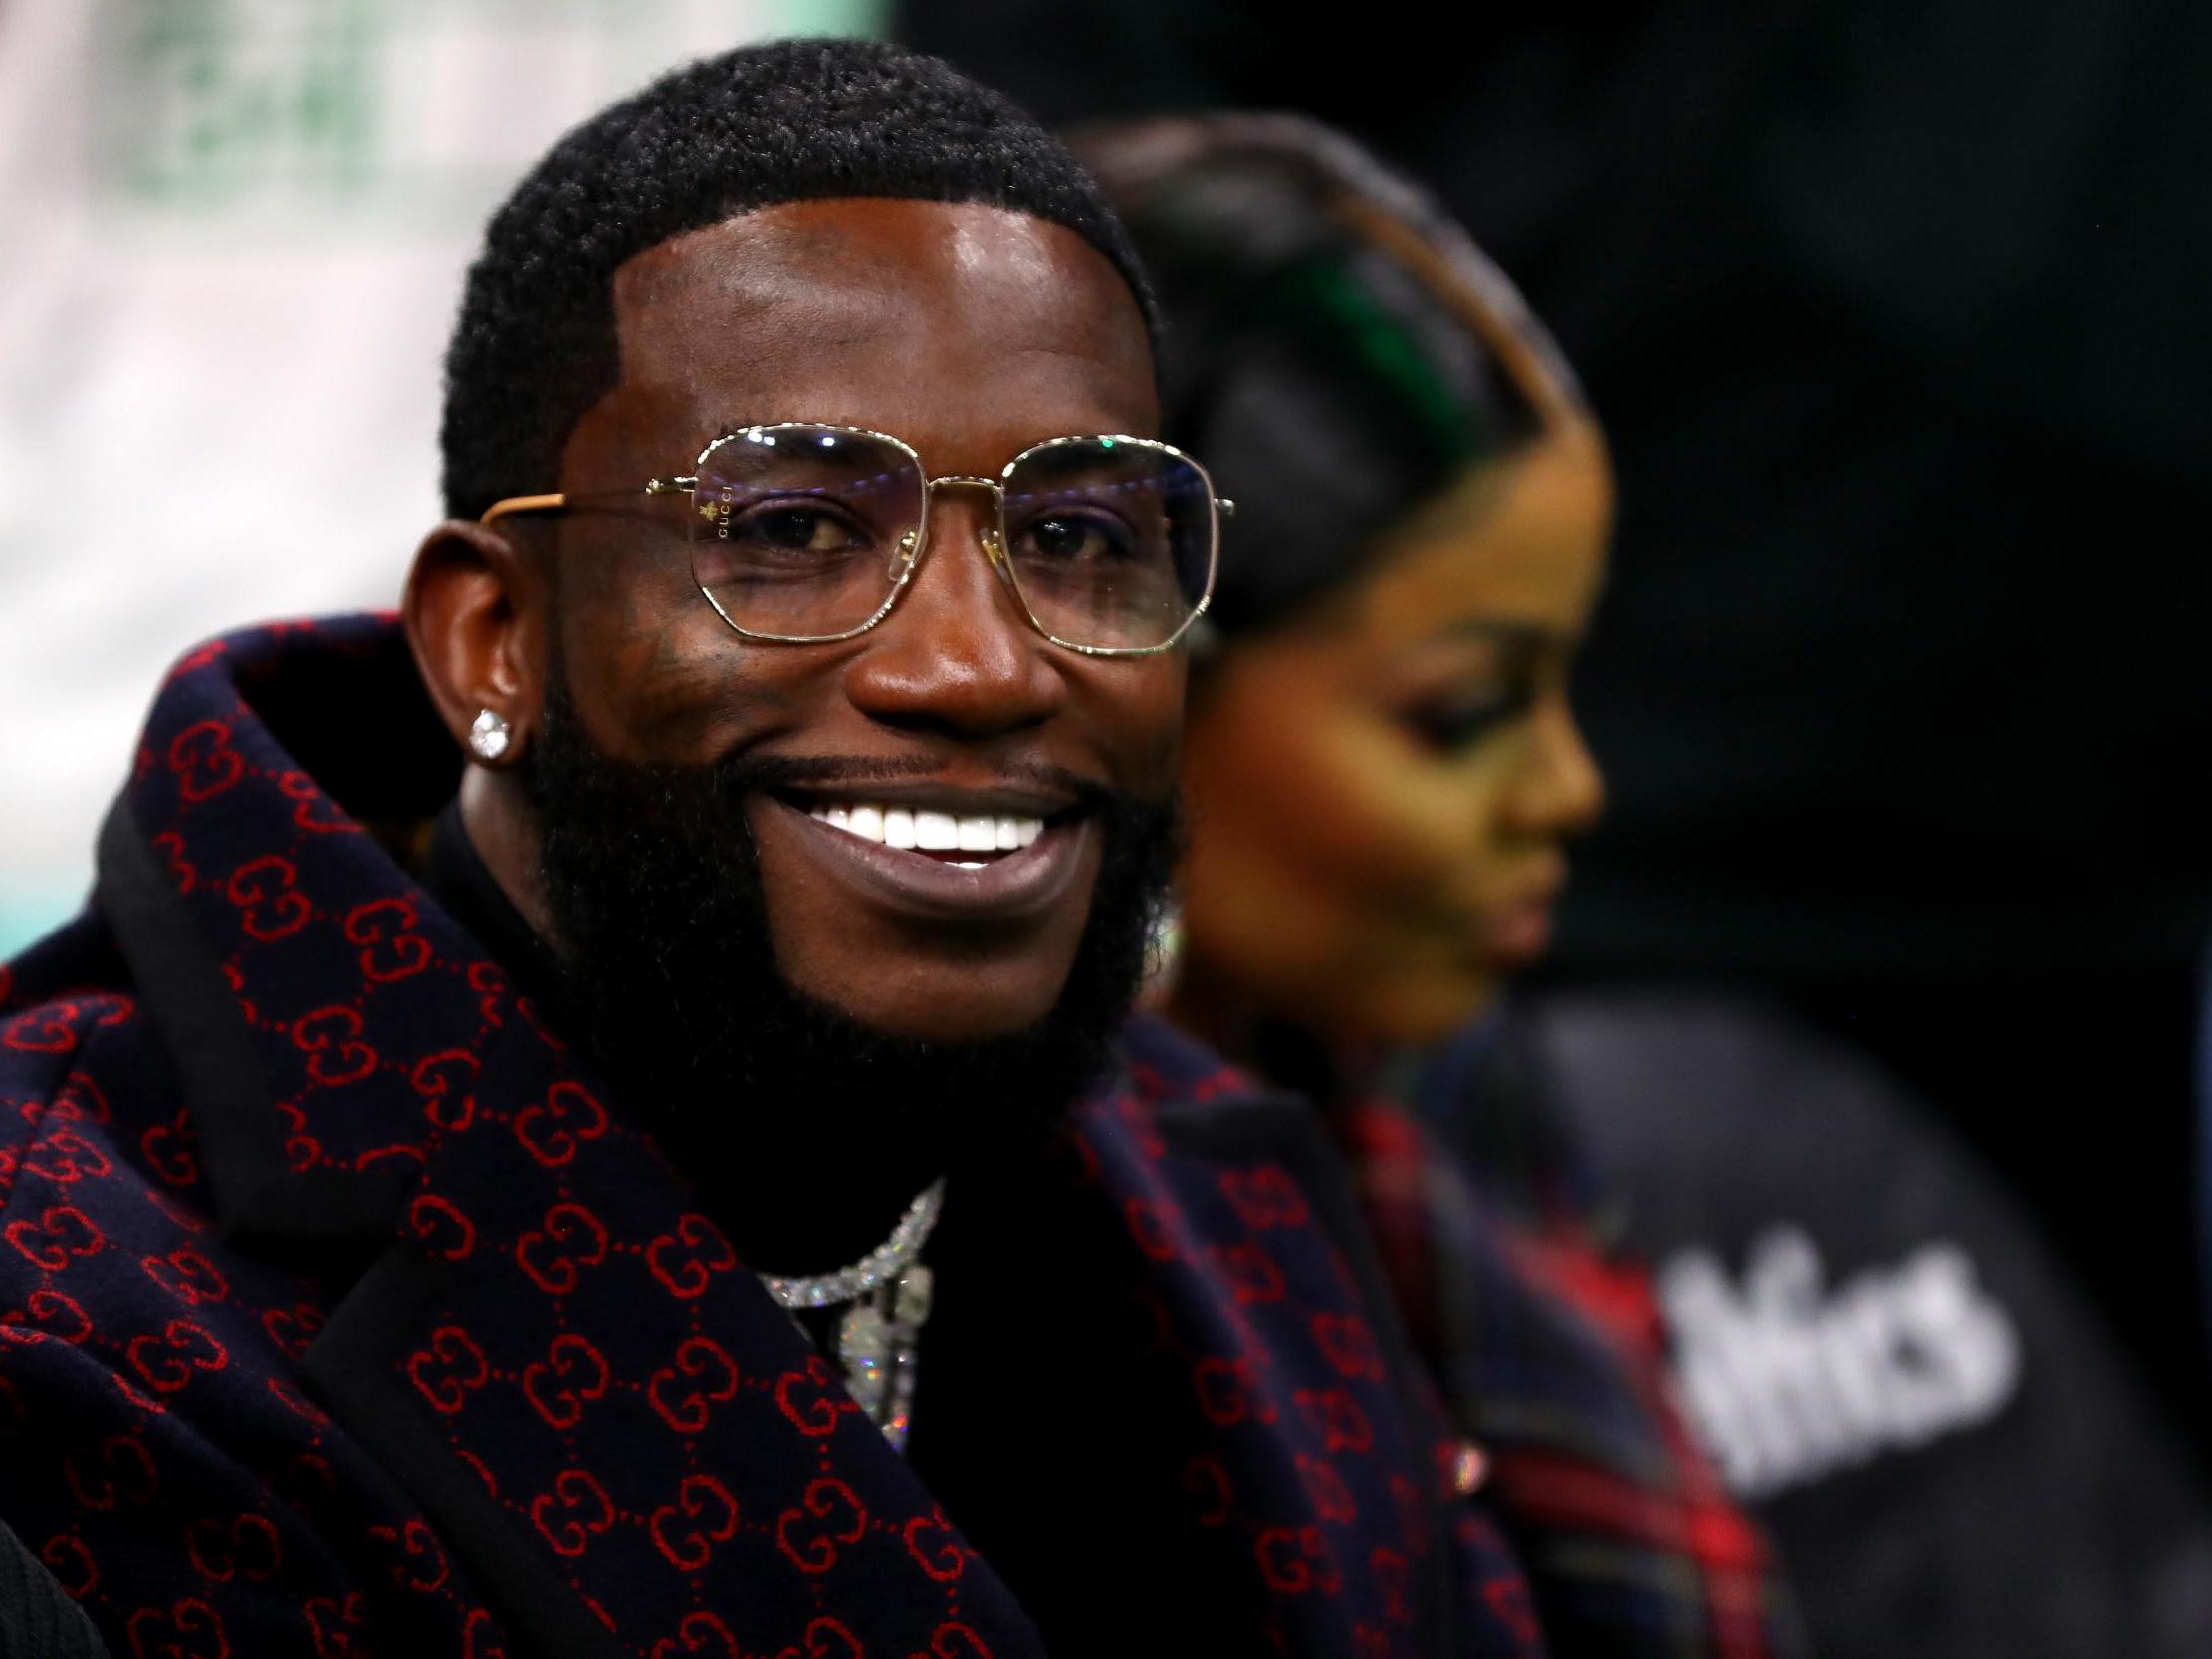 Gucci Mane in 2019